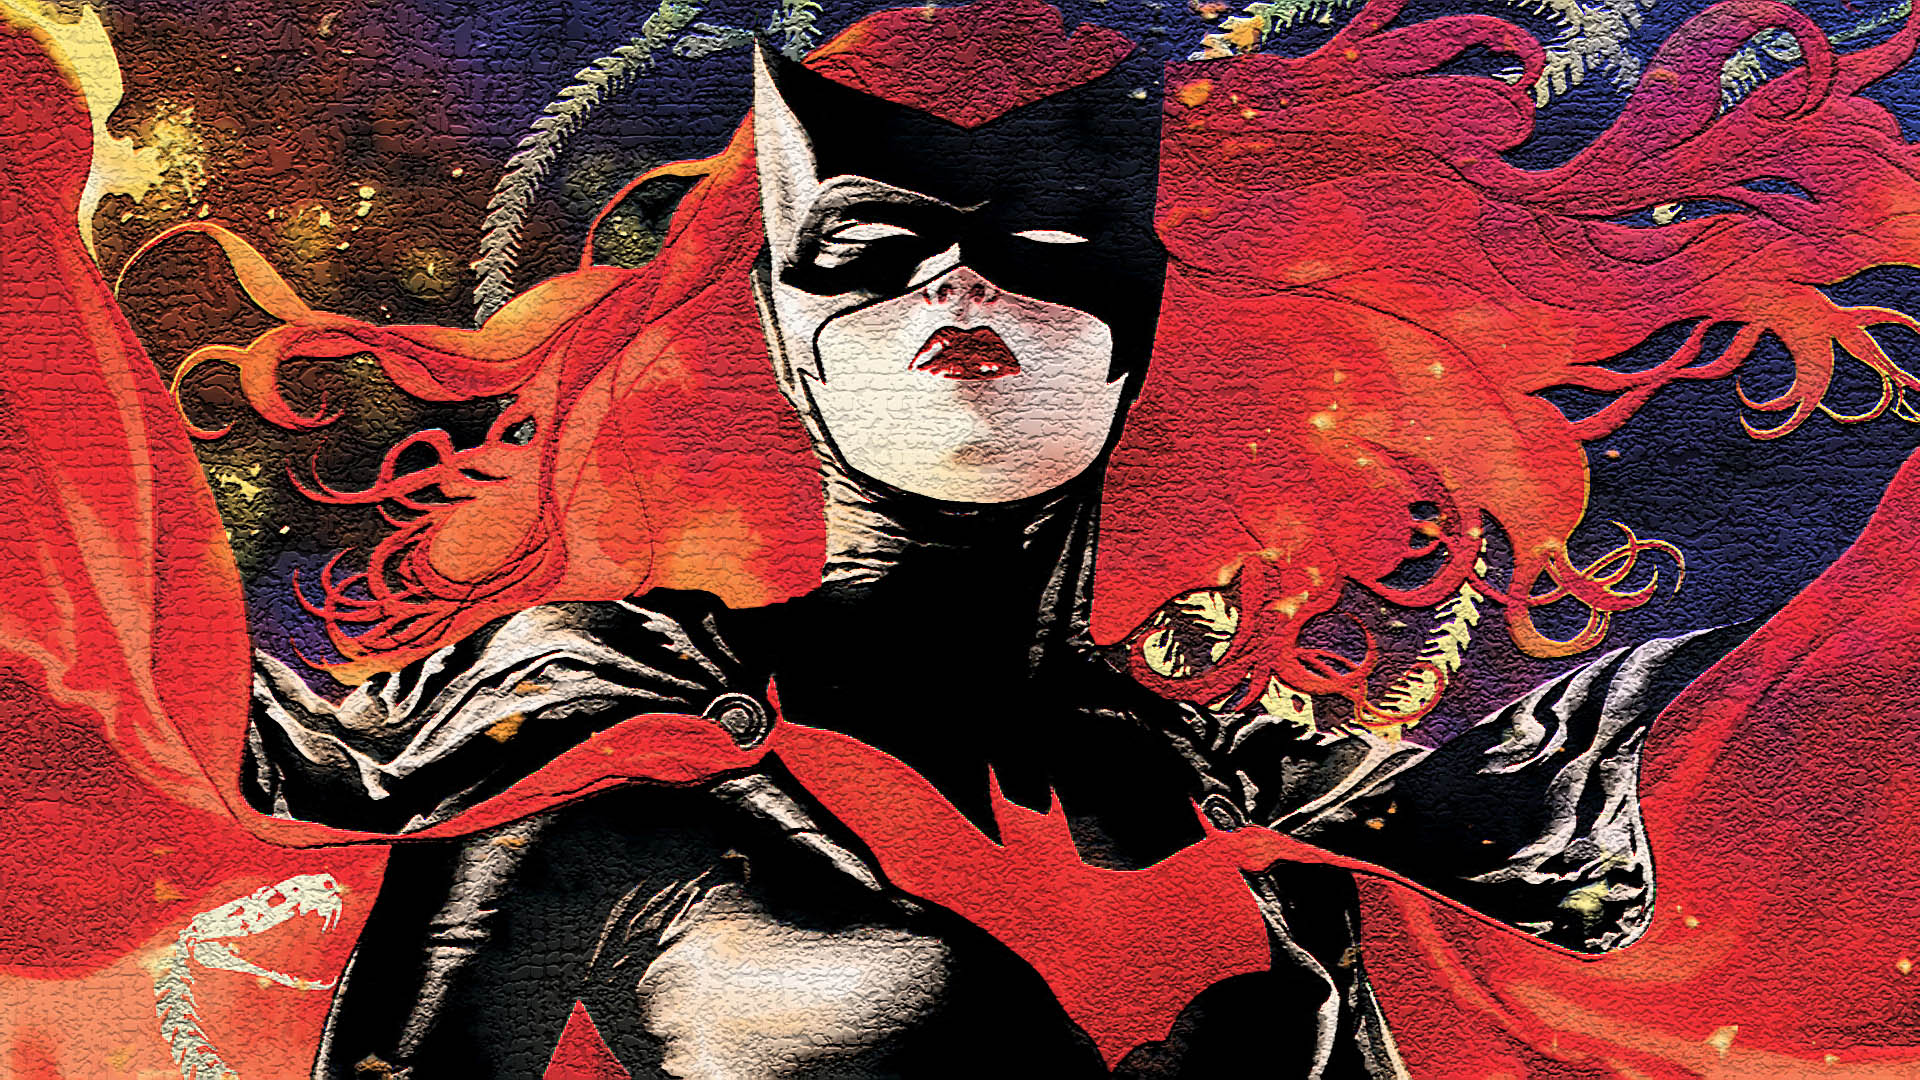 Batwoman Wallpaper